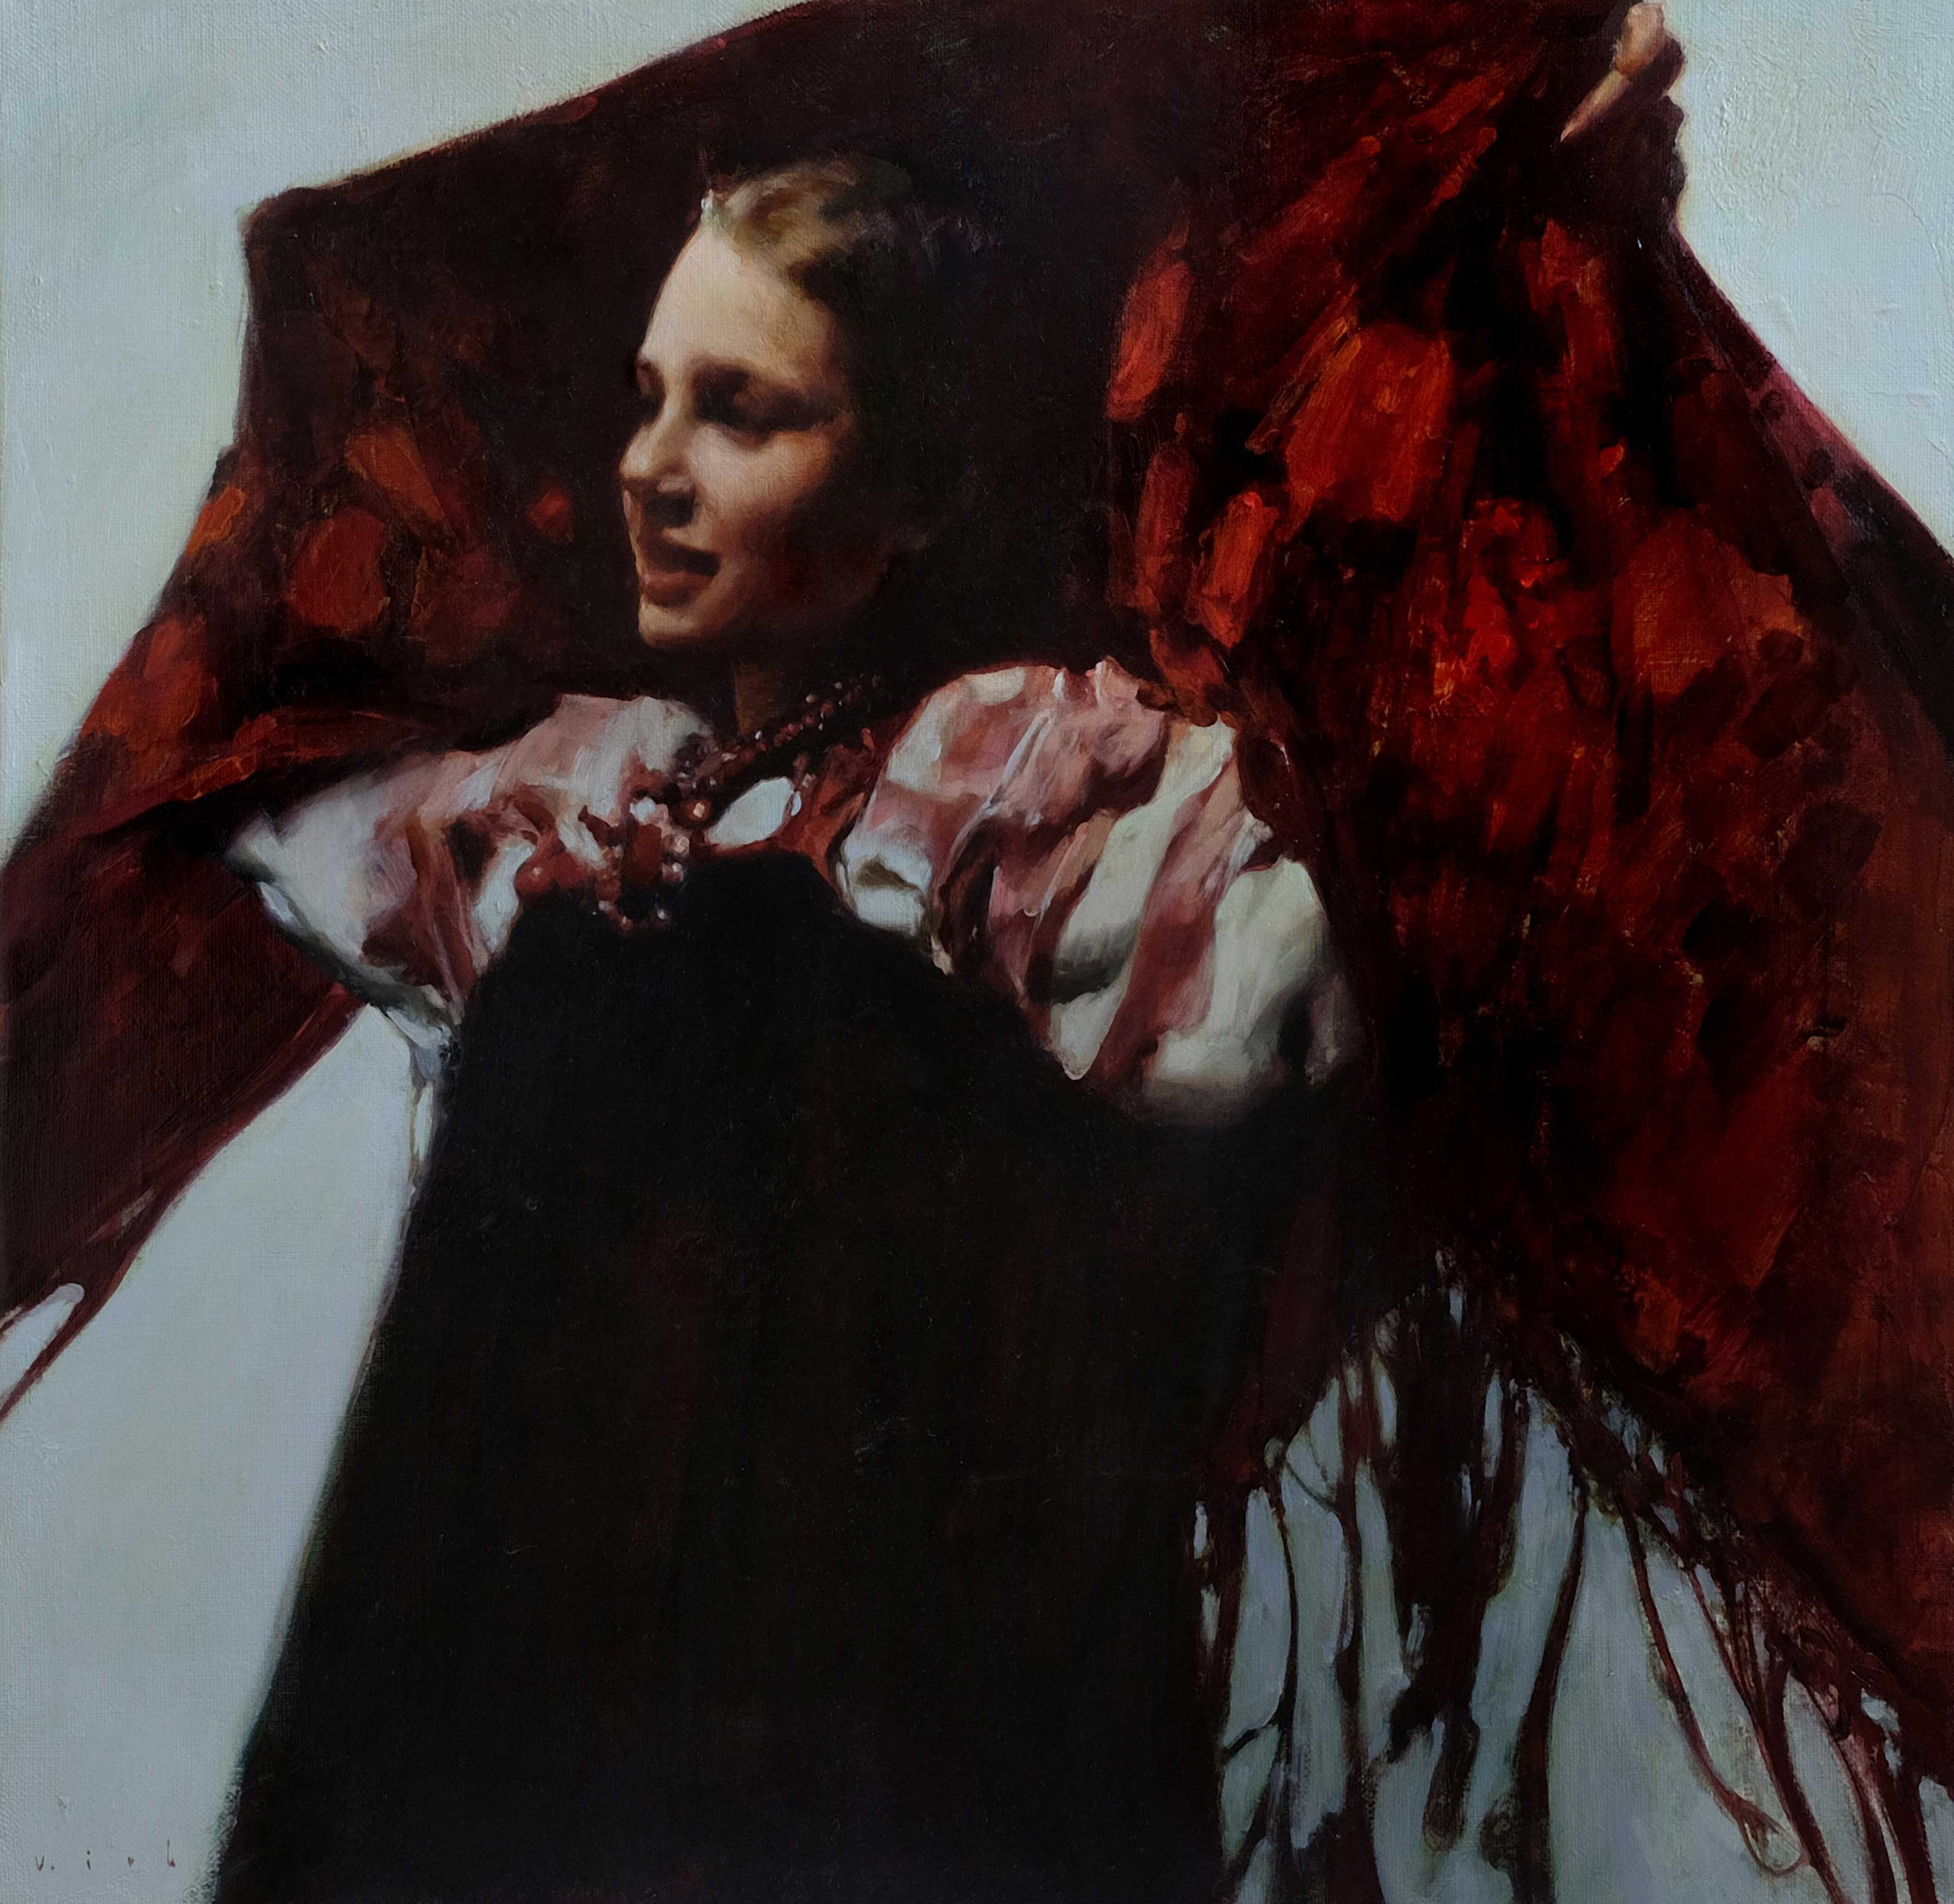 Girl - 1, Vladimir Kirillov, Buy the painting Oil